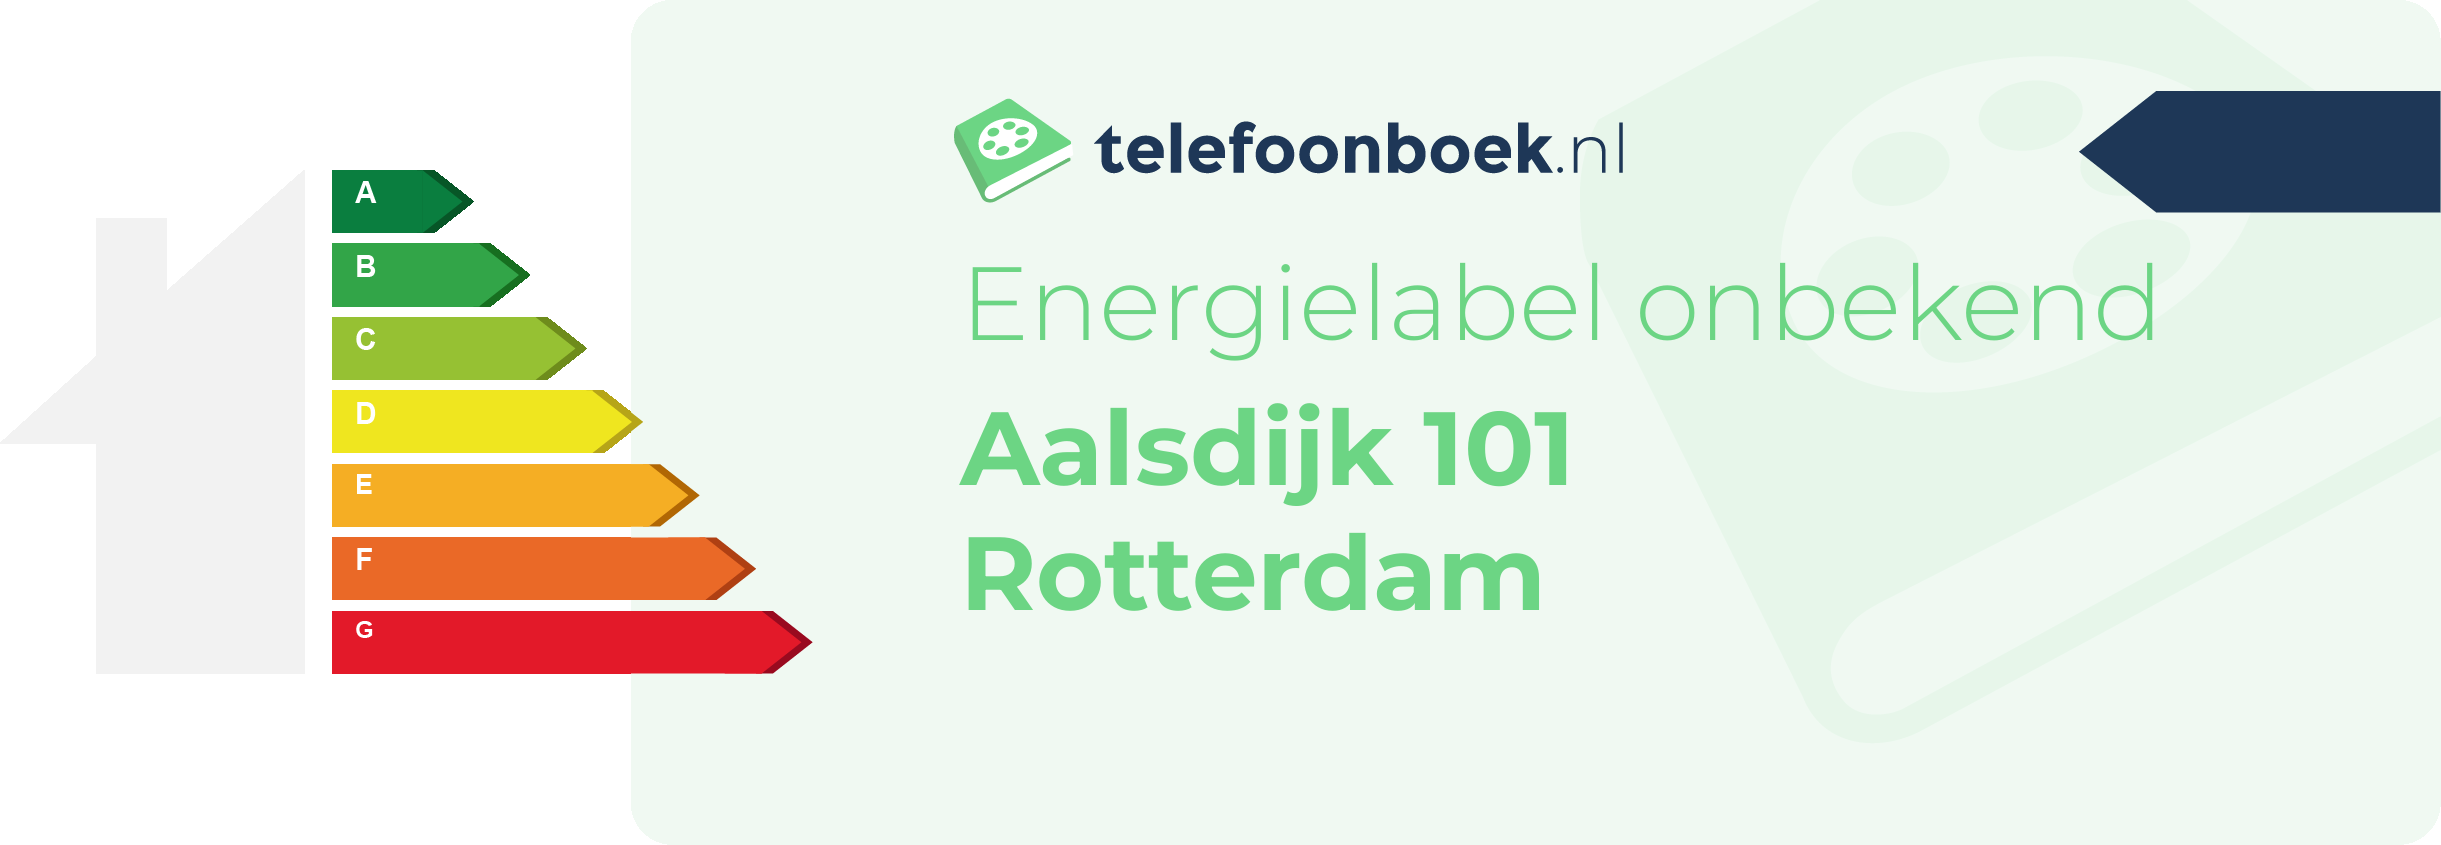 Energielabel Aalsdijk 101 Rotterdam